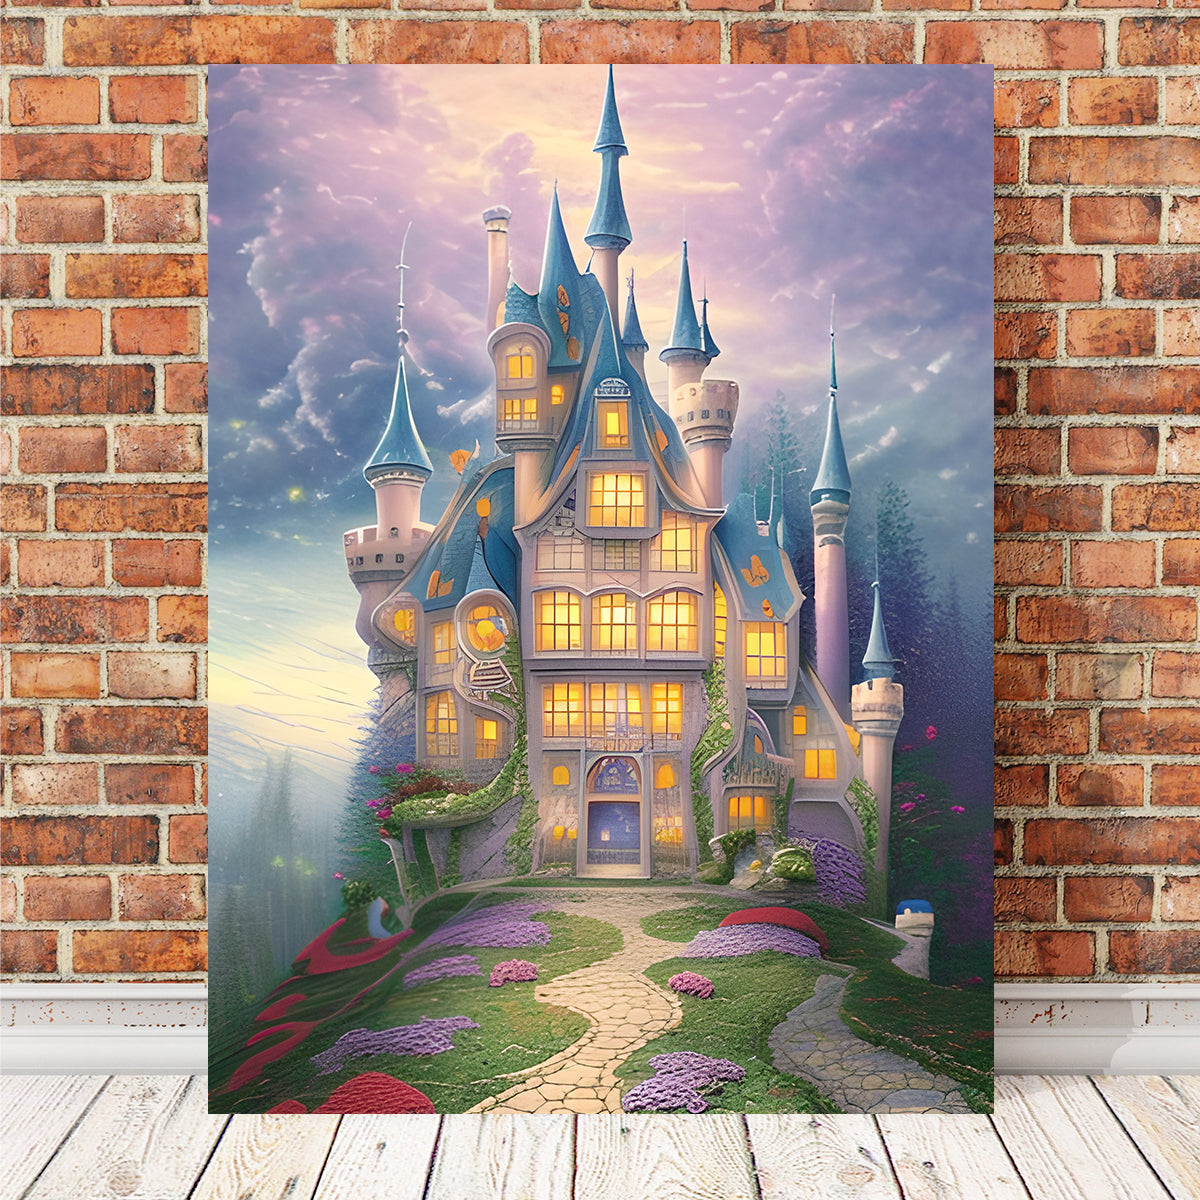 Fairytale Castle